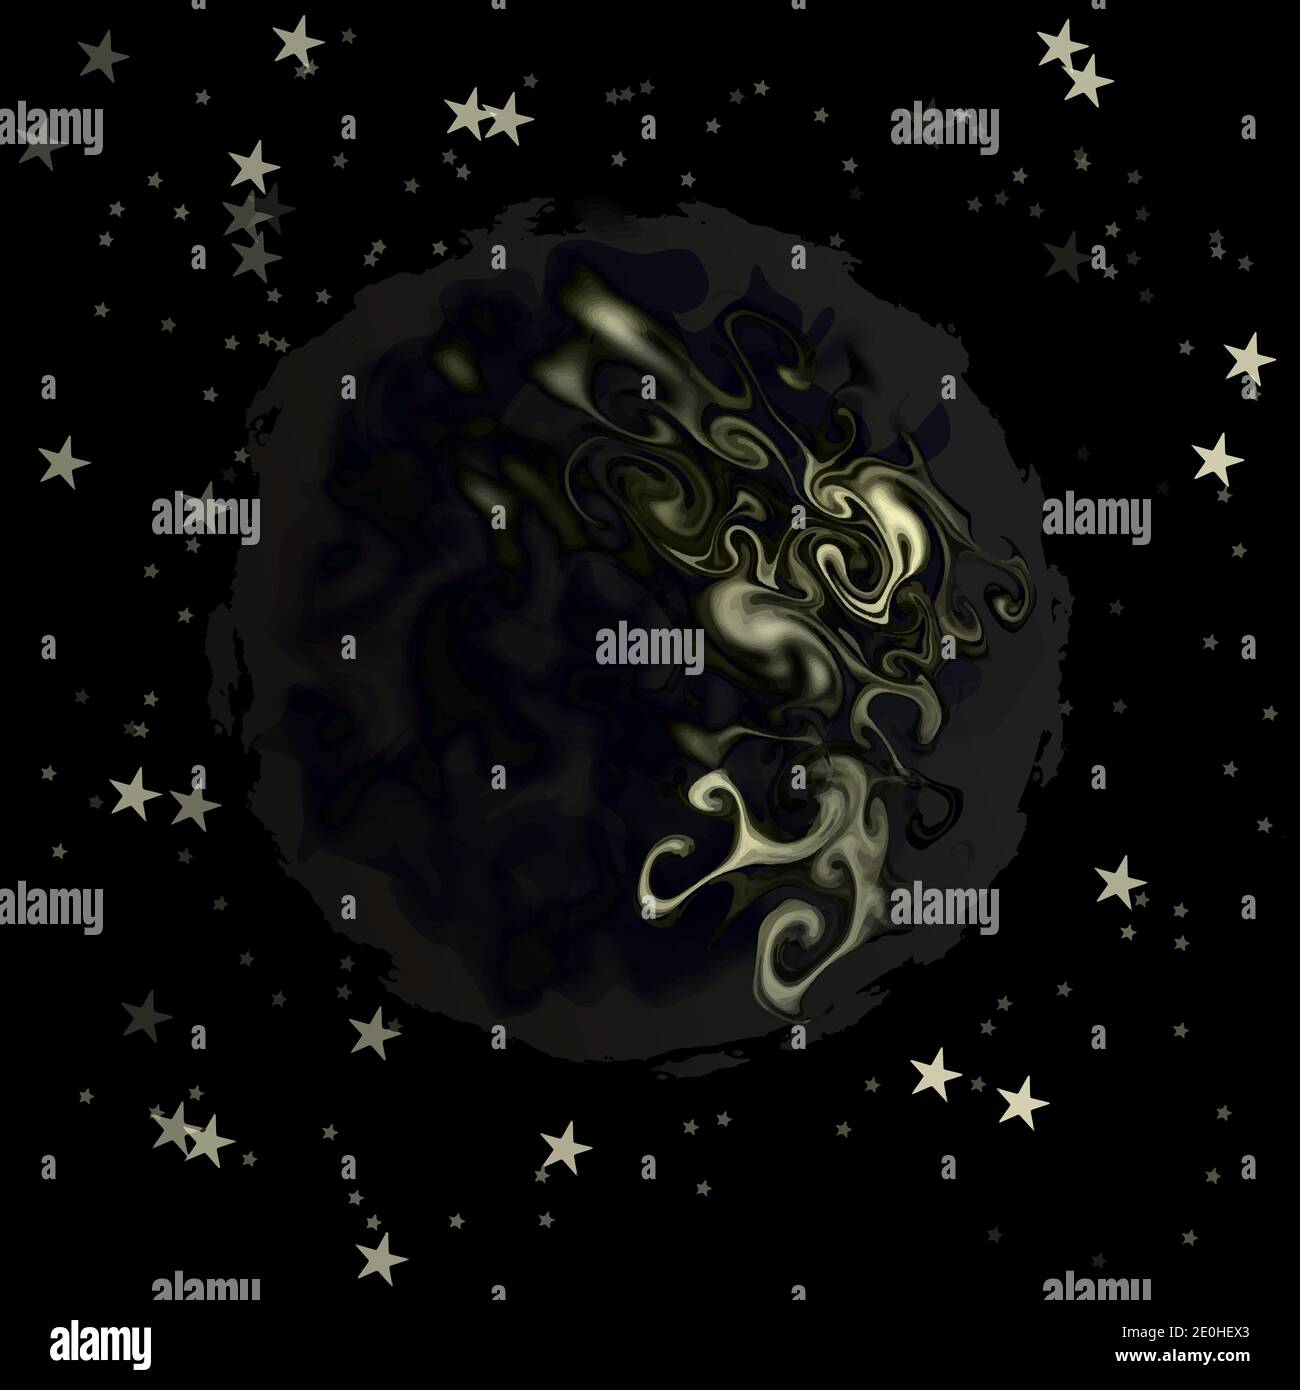 Pianeta alieno scuro tra stelle, eps10 stilizzato immagine vettoriale stratificata isolato su sfondo nero. Illustrazione Vettoriale